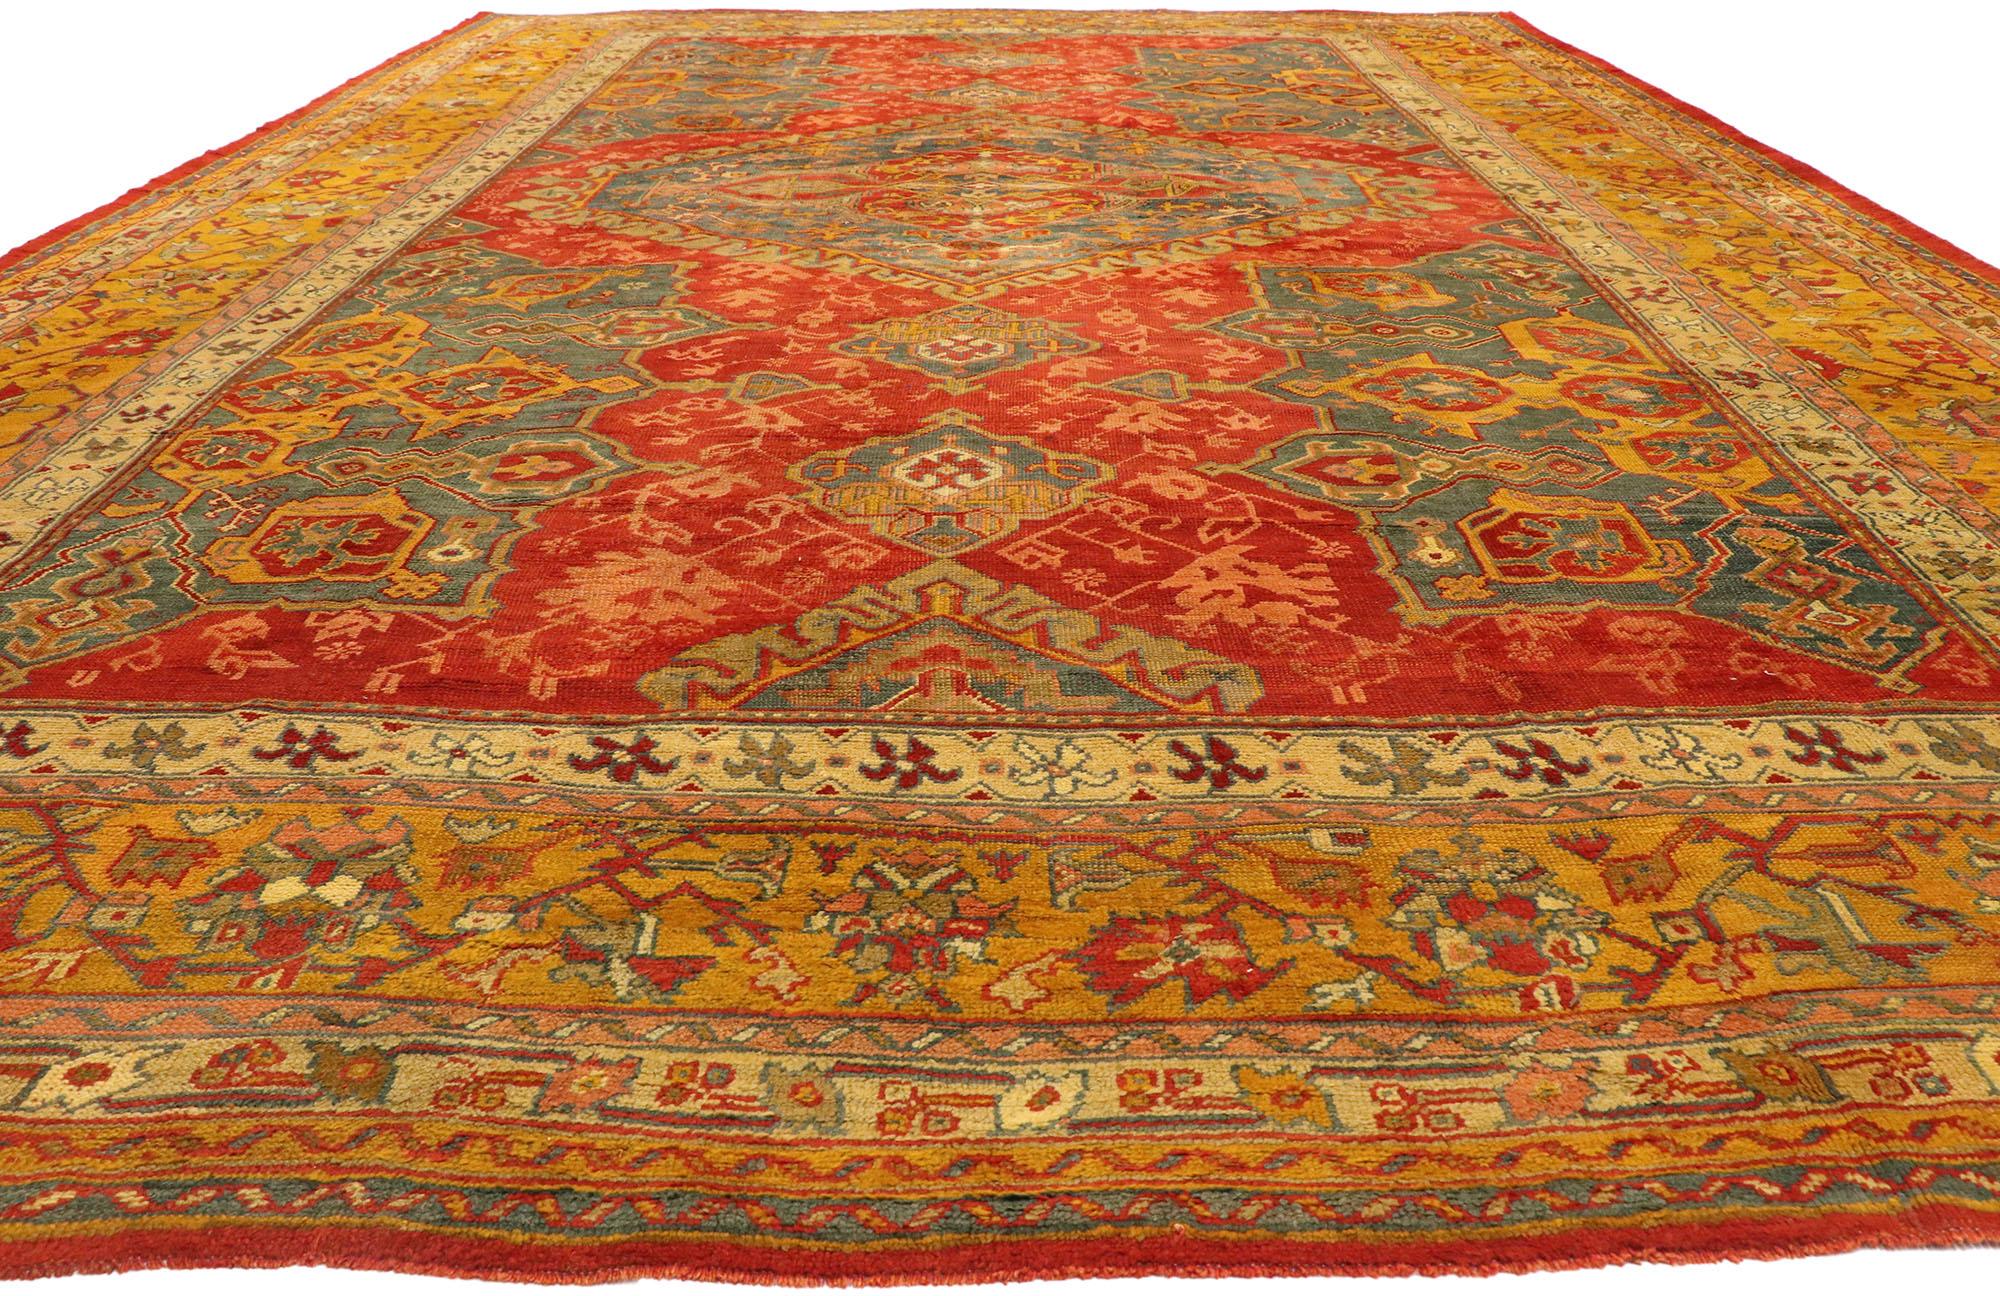 Oushak 1880s Oversized Antique Turkish Smyrna Rug, Hotel Lobby Size Carpet For Sale